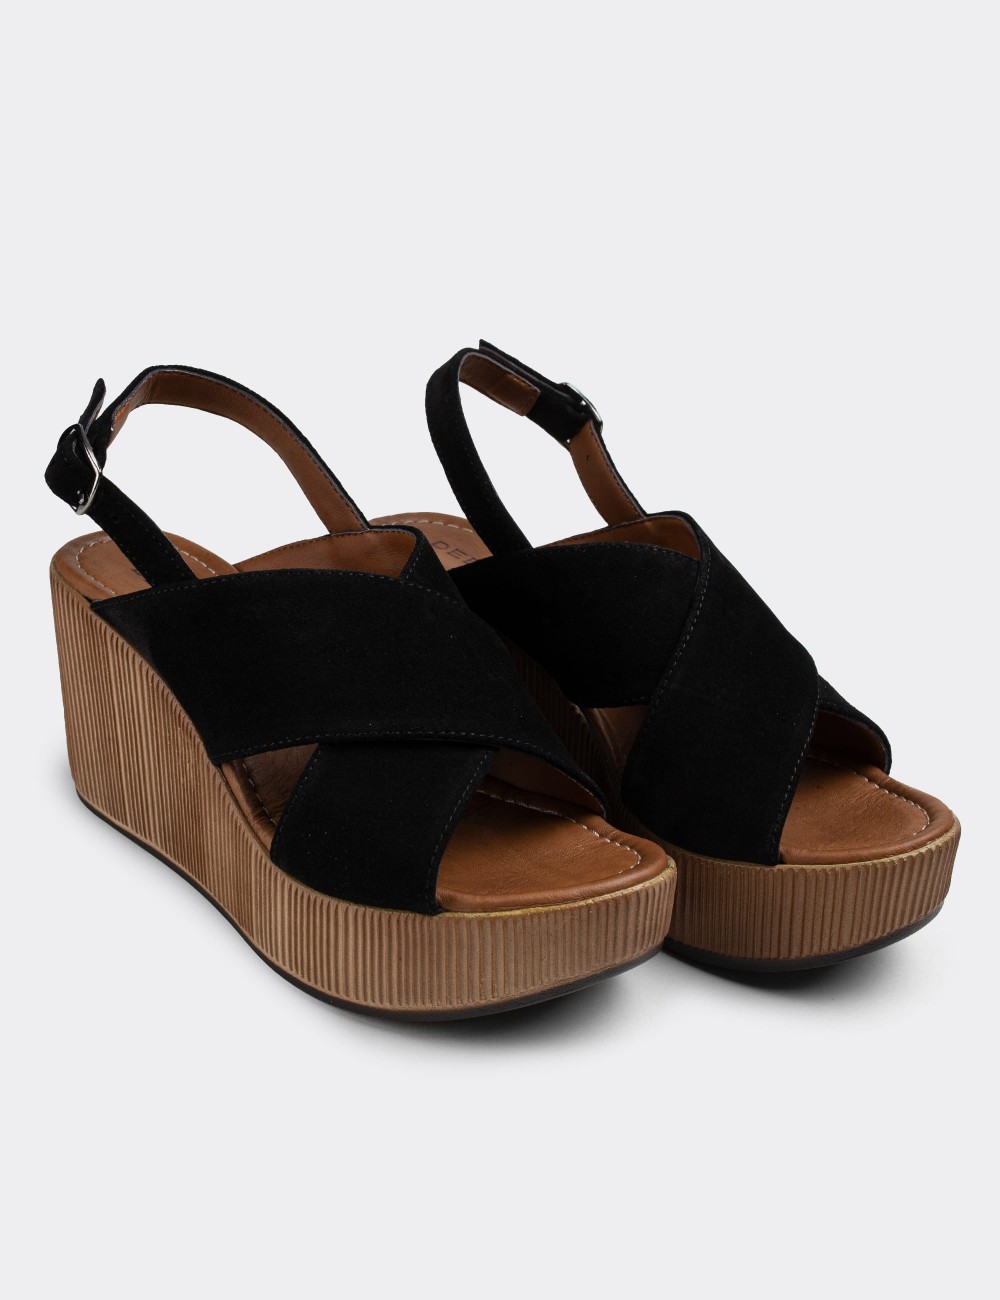 Black Suede Leather Sandals - E6174ZSYHC02